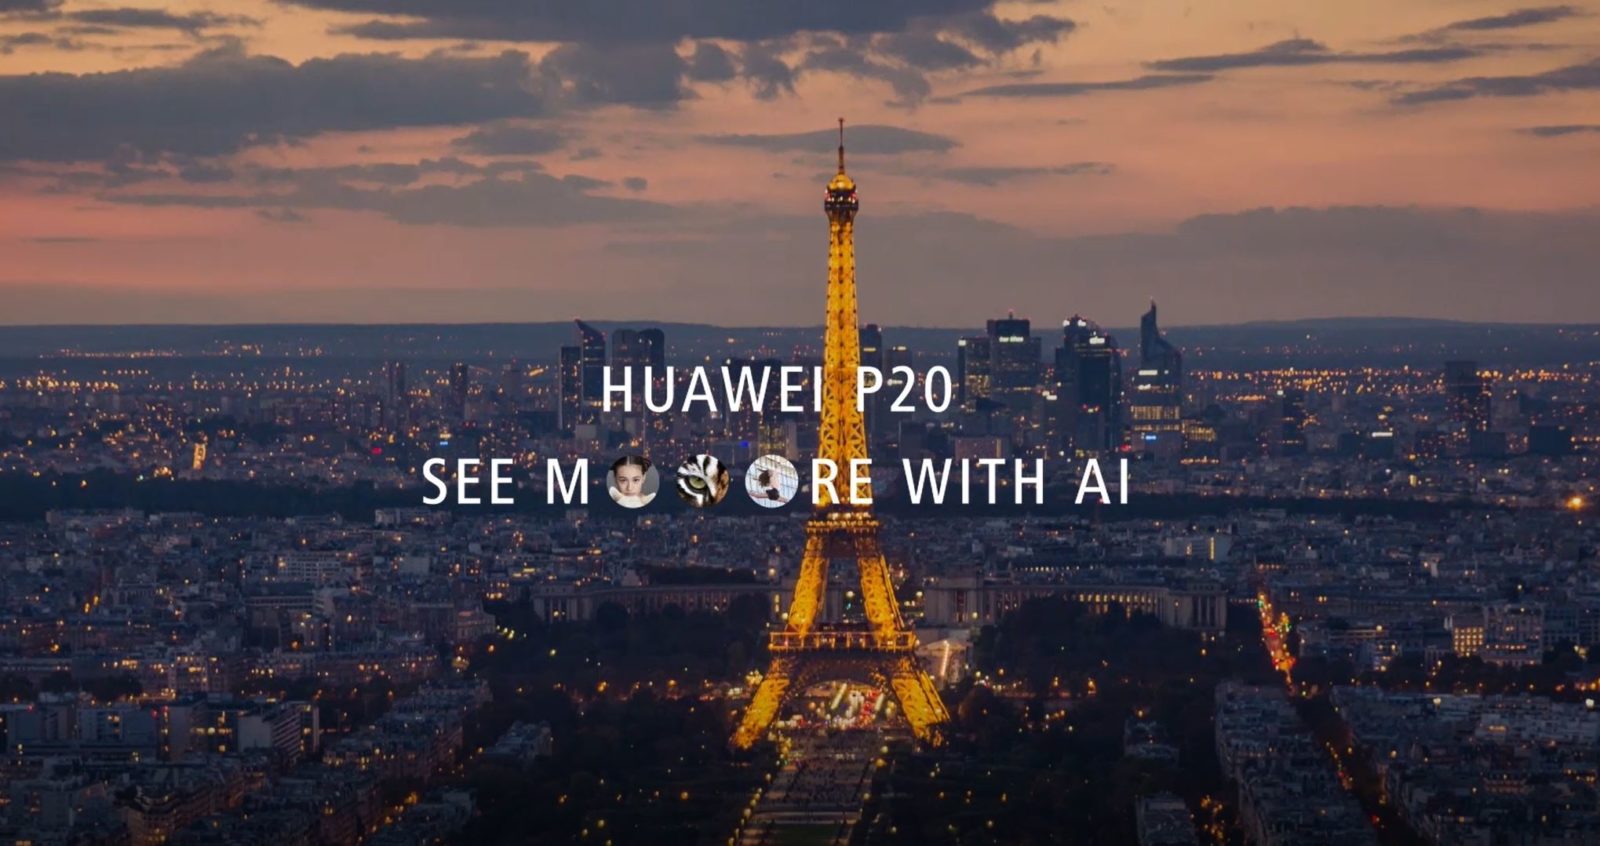 نام هوآوی پی ۲۰ (Huawei P20) و اشاره به دوربین ۳ گانه در یک ویدیو کوتاه رسمی